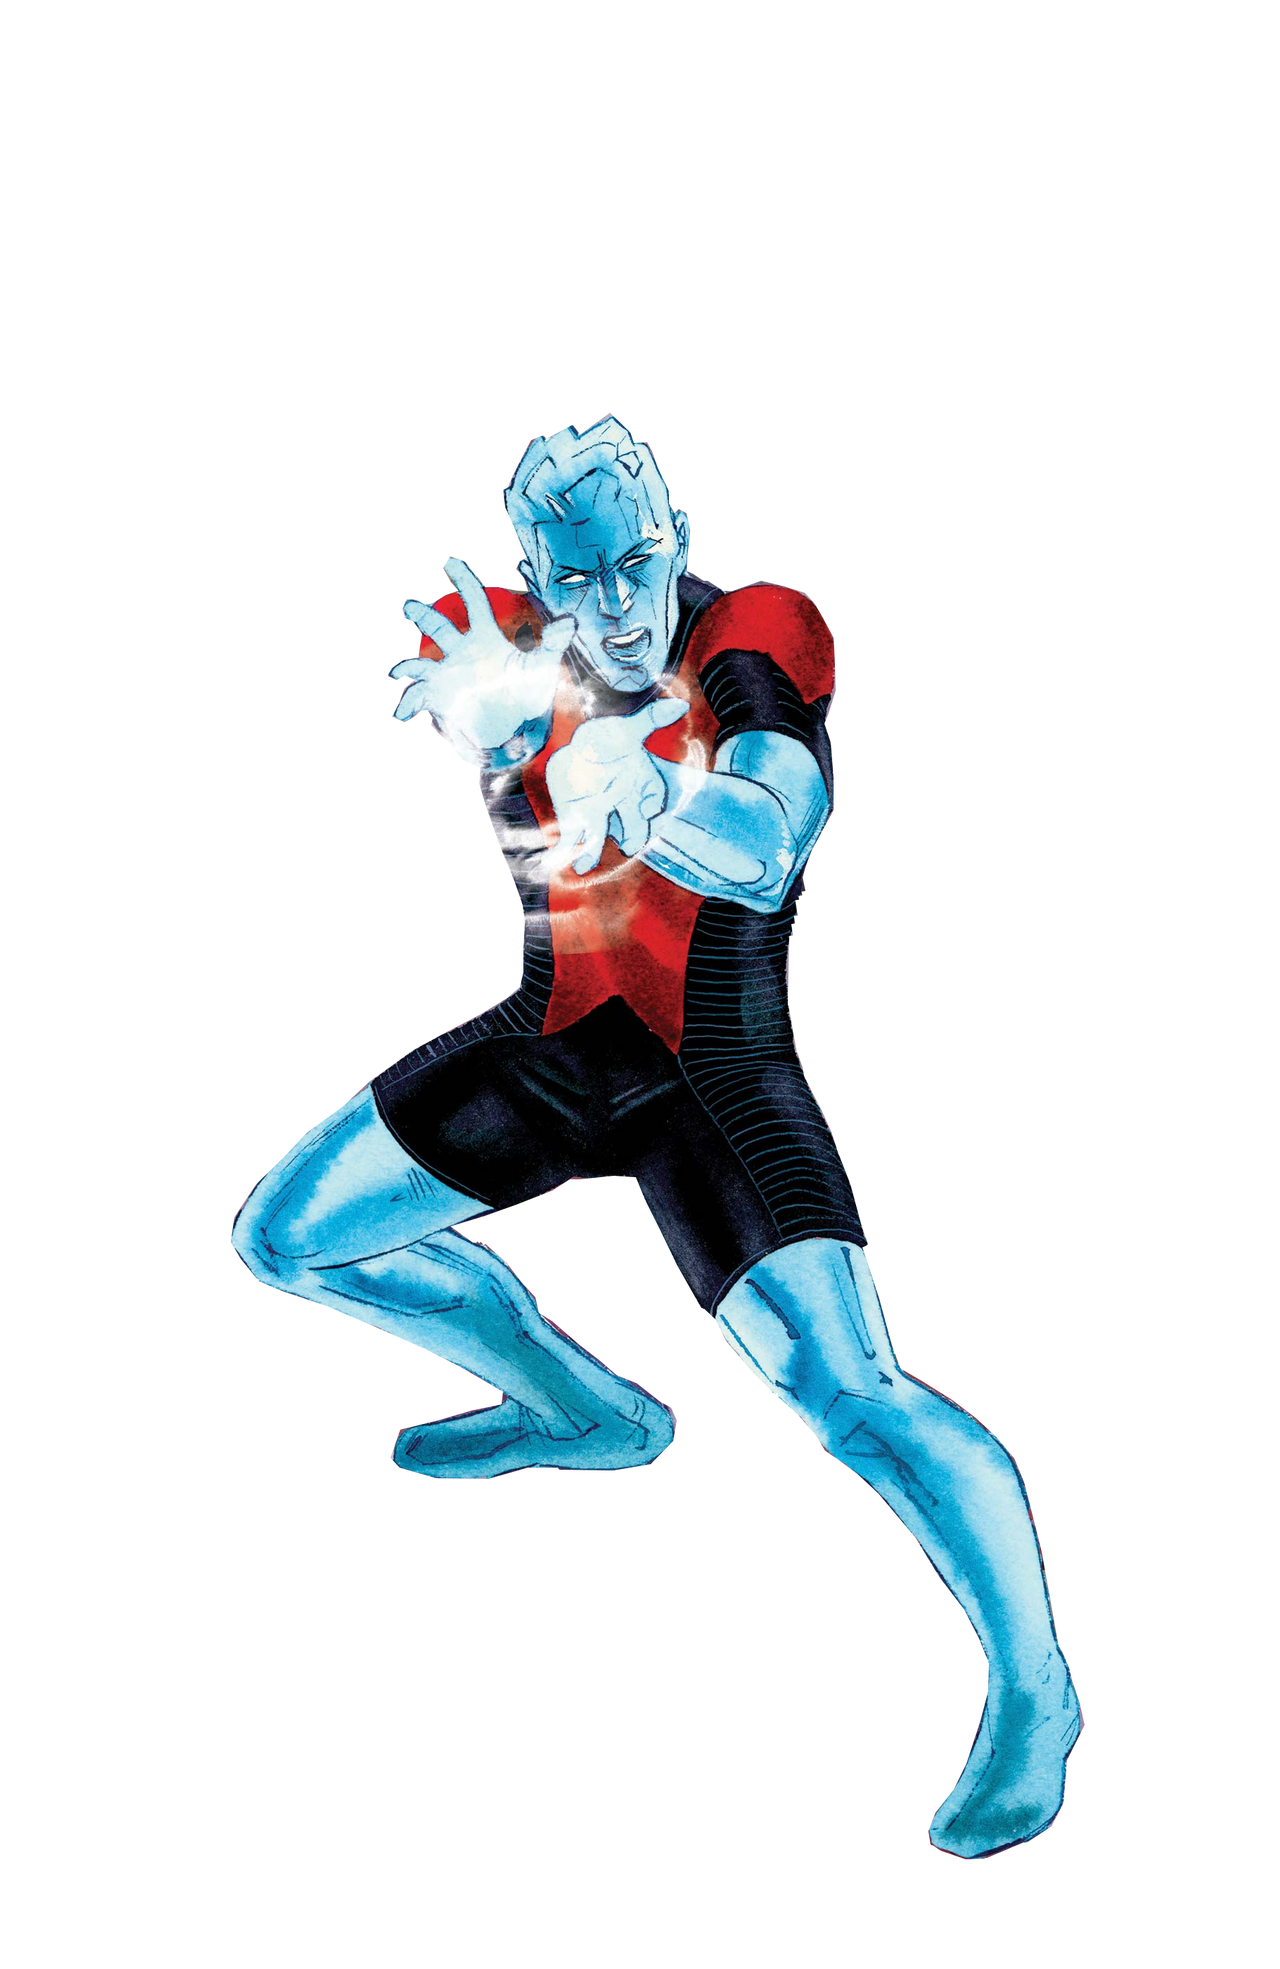 Marvel's Iceman by R3DRUM81 on DeviantArt